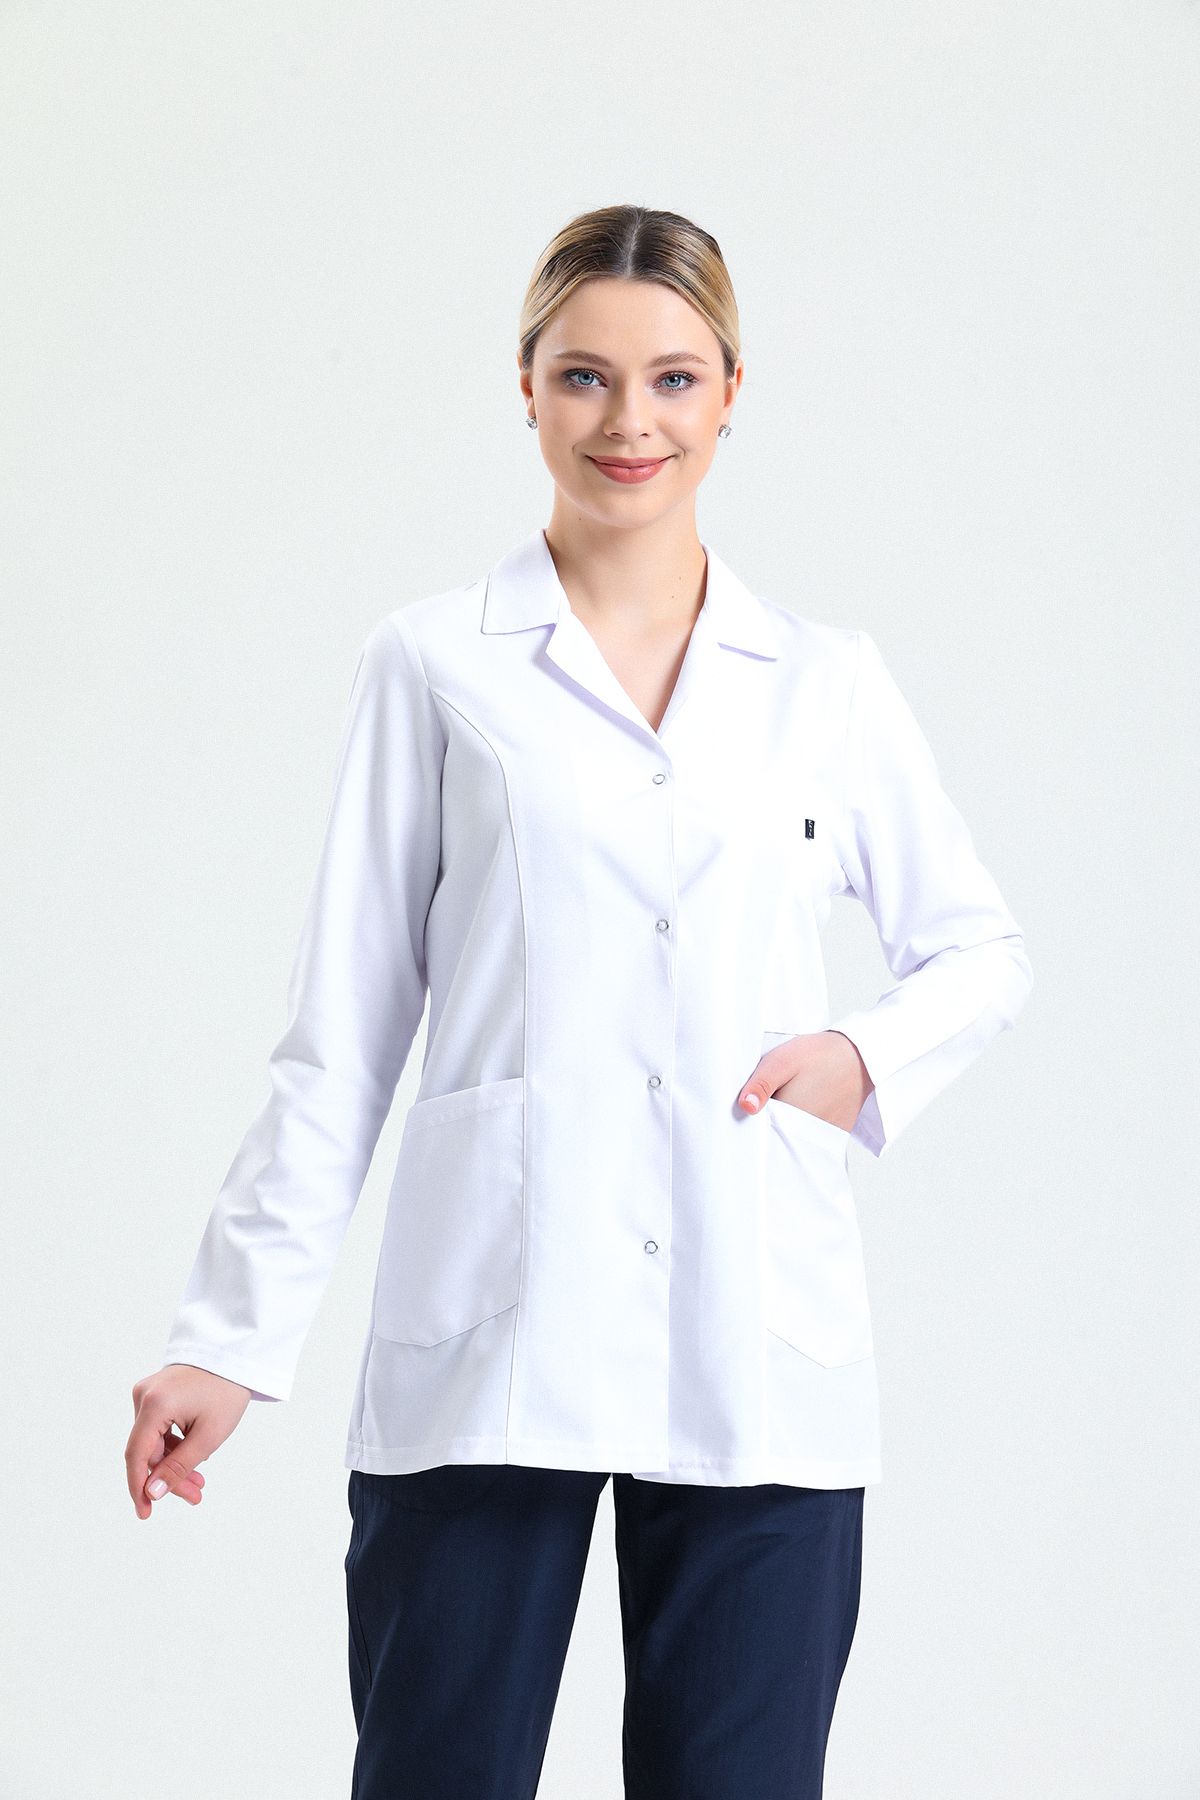 Ehil Önlük Doktor Hemşire Eczacı Lab Öğretmen Önlüğü Gömlek Yaka Kısa Beyaz Önlük